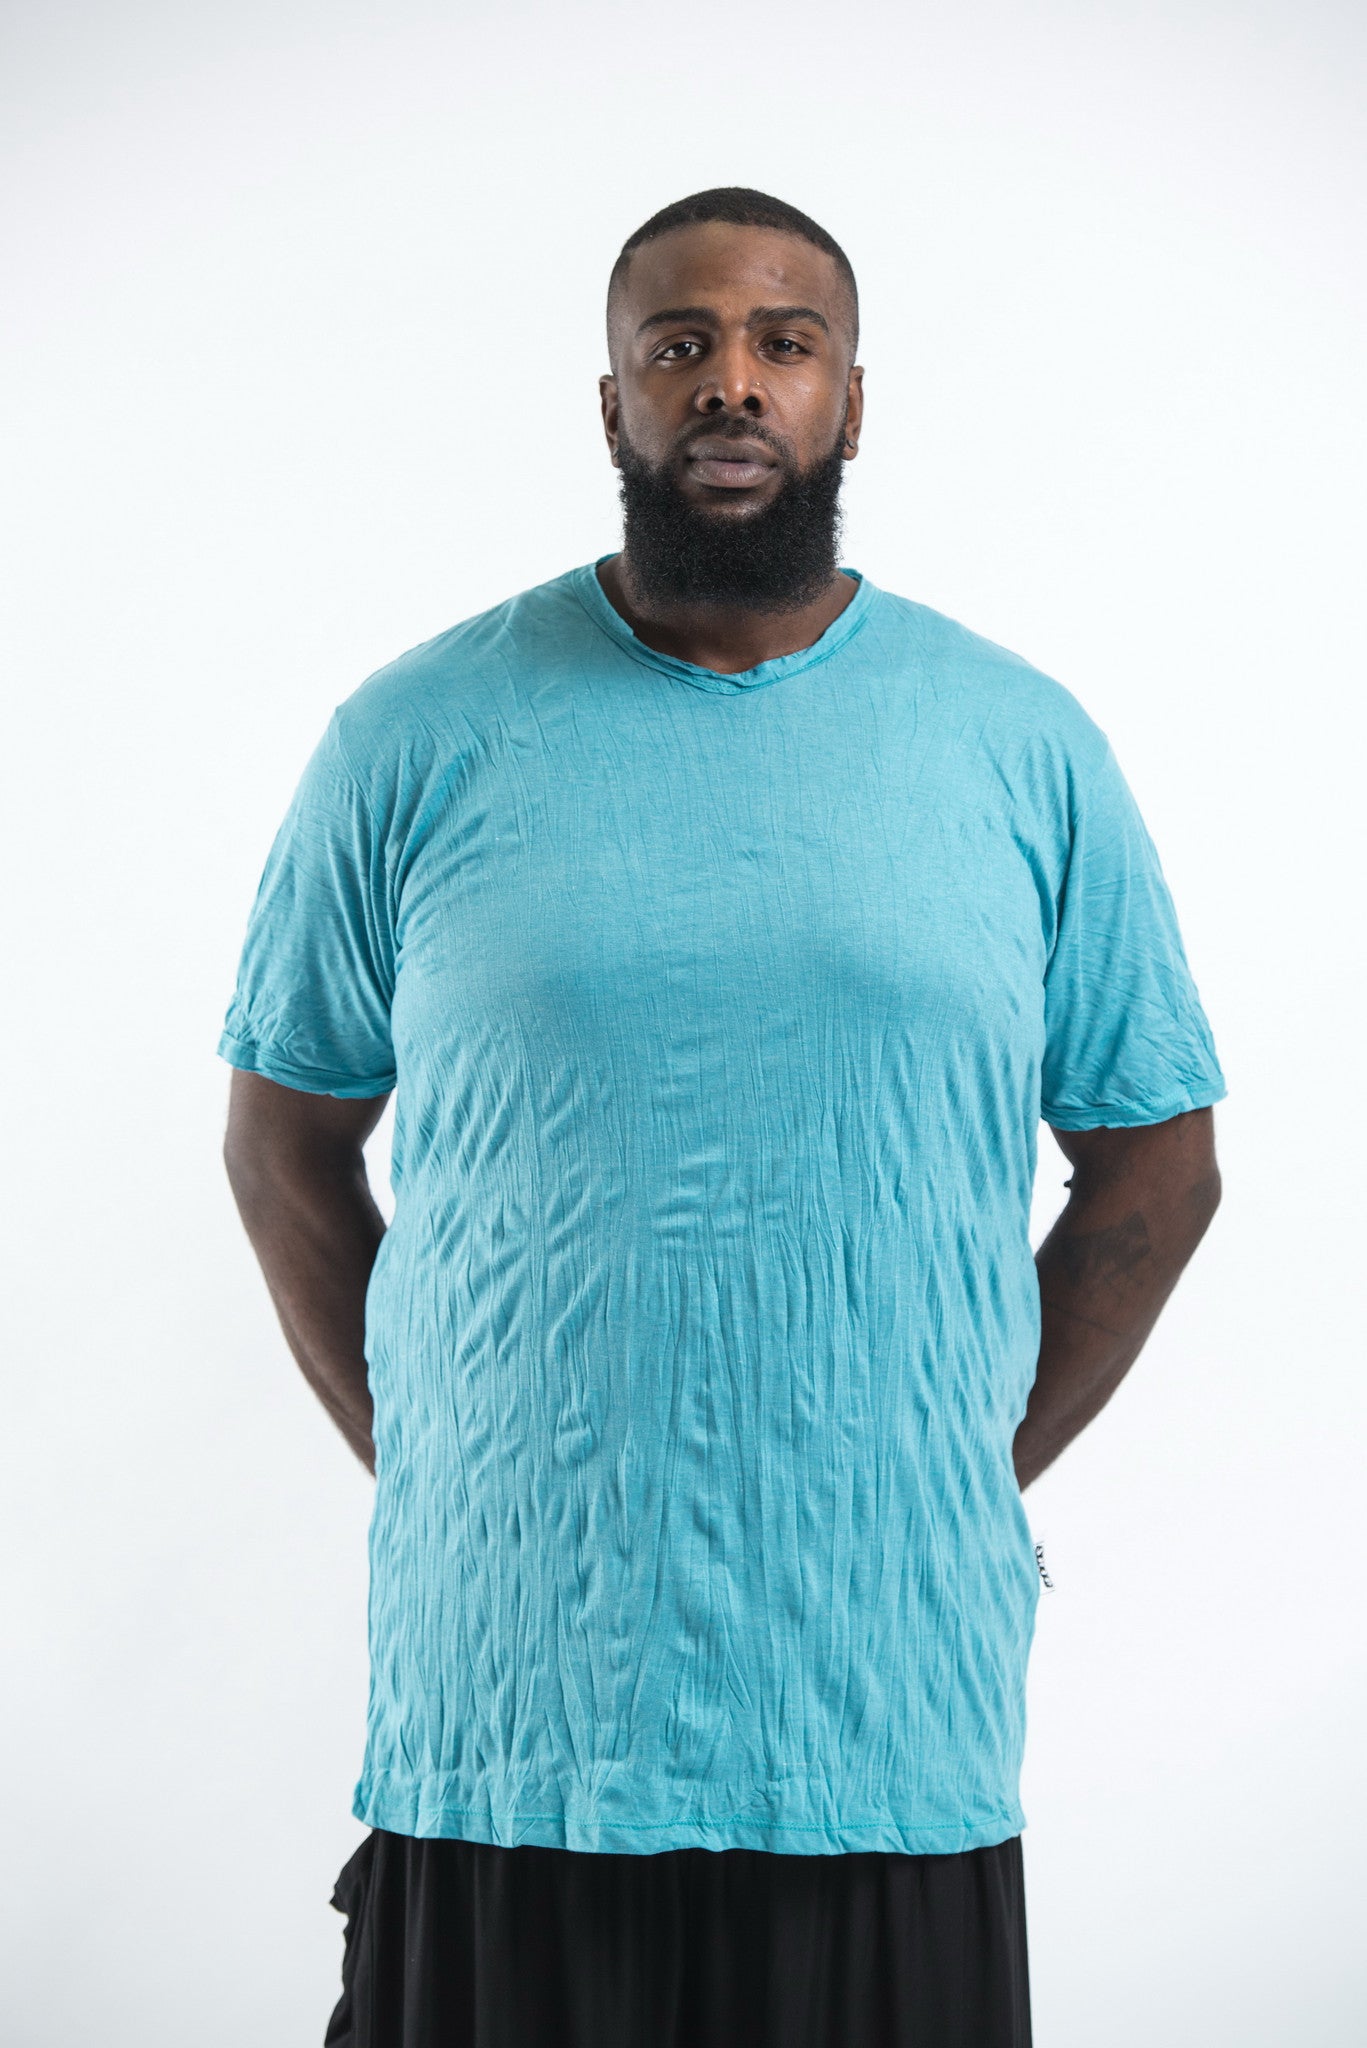 Plus Size Sure Design Men's Blank T-Shirt Turquoise – Sure Design Wholesale